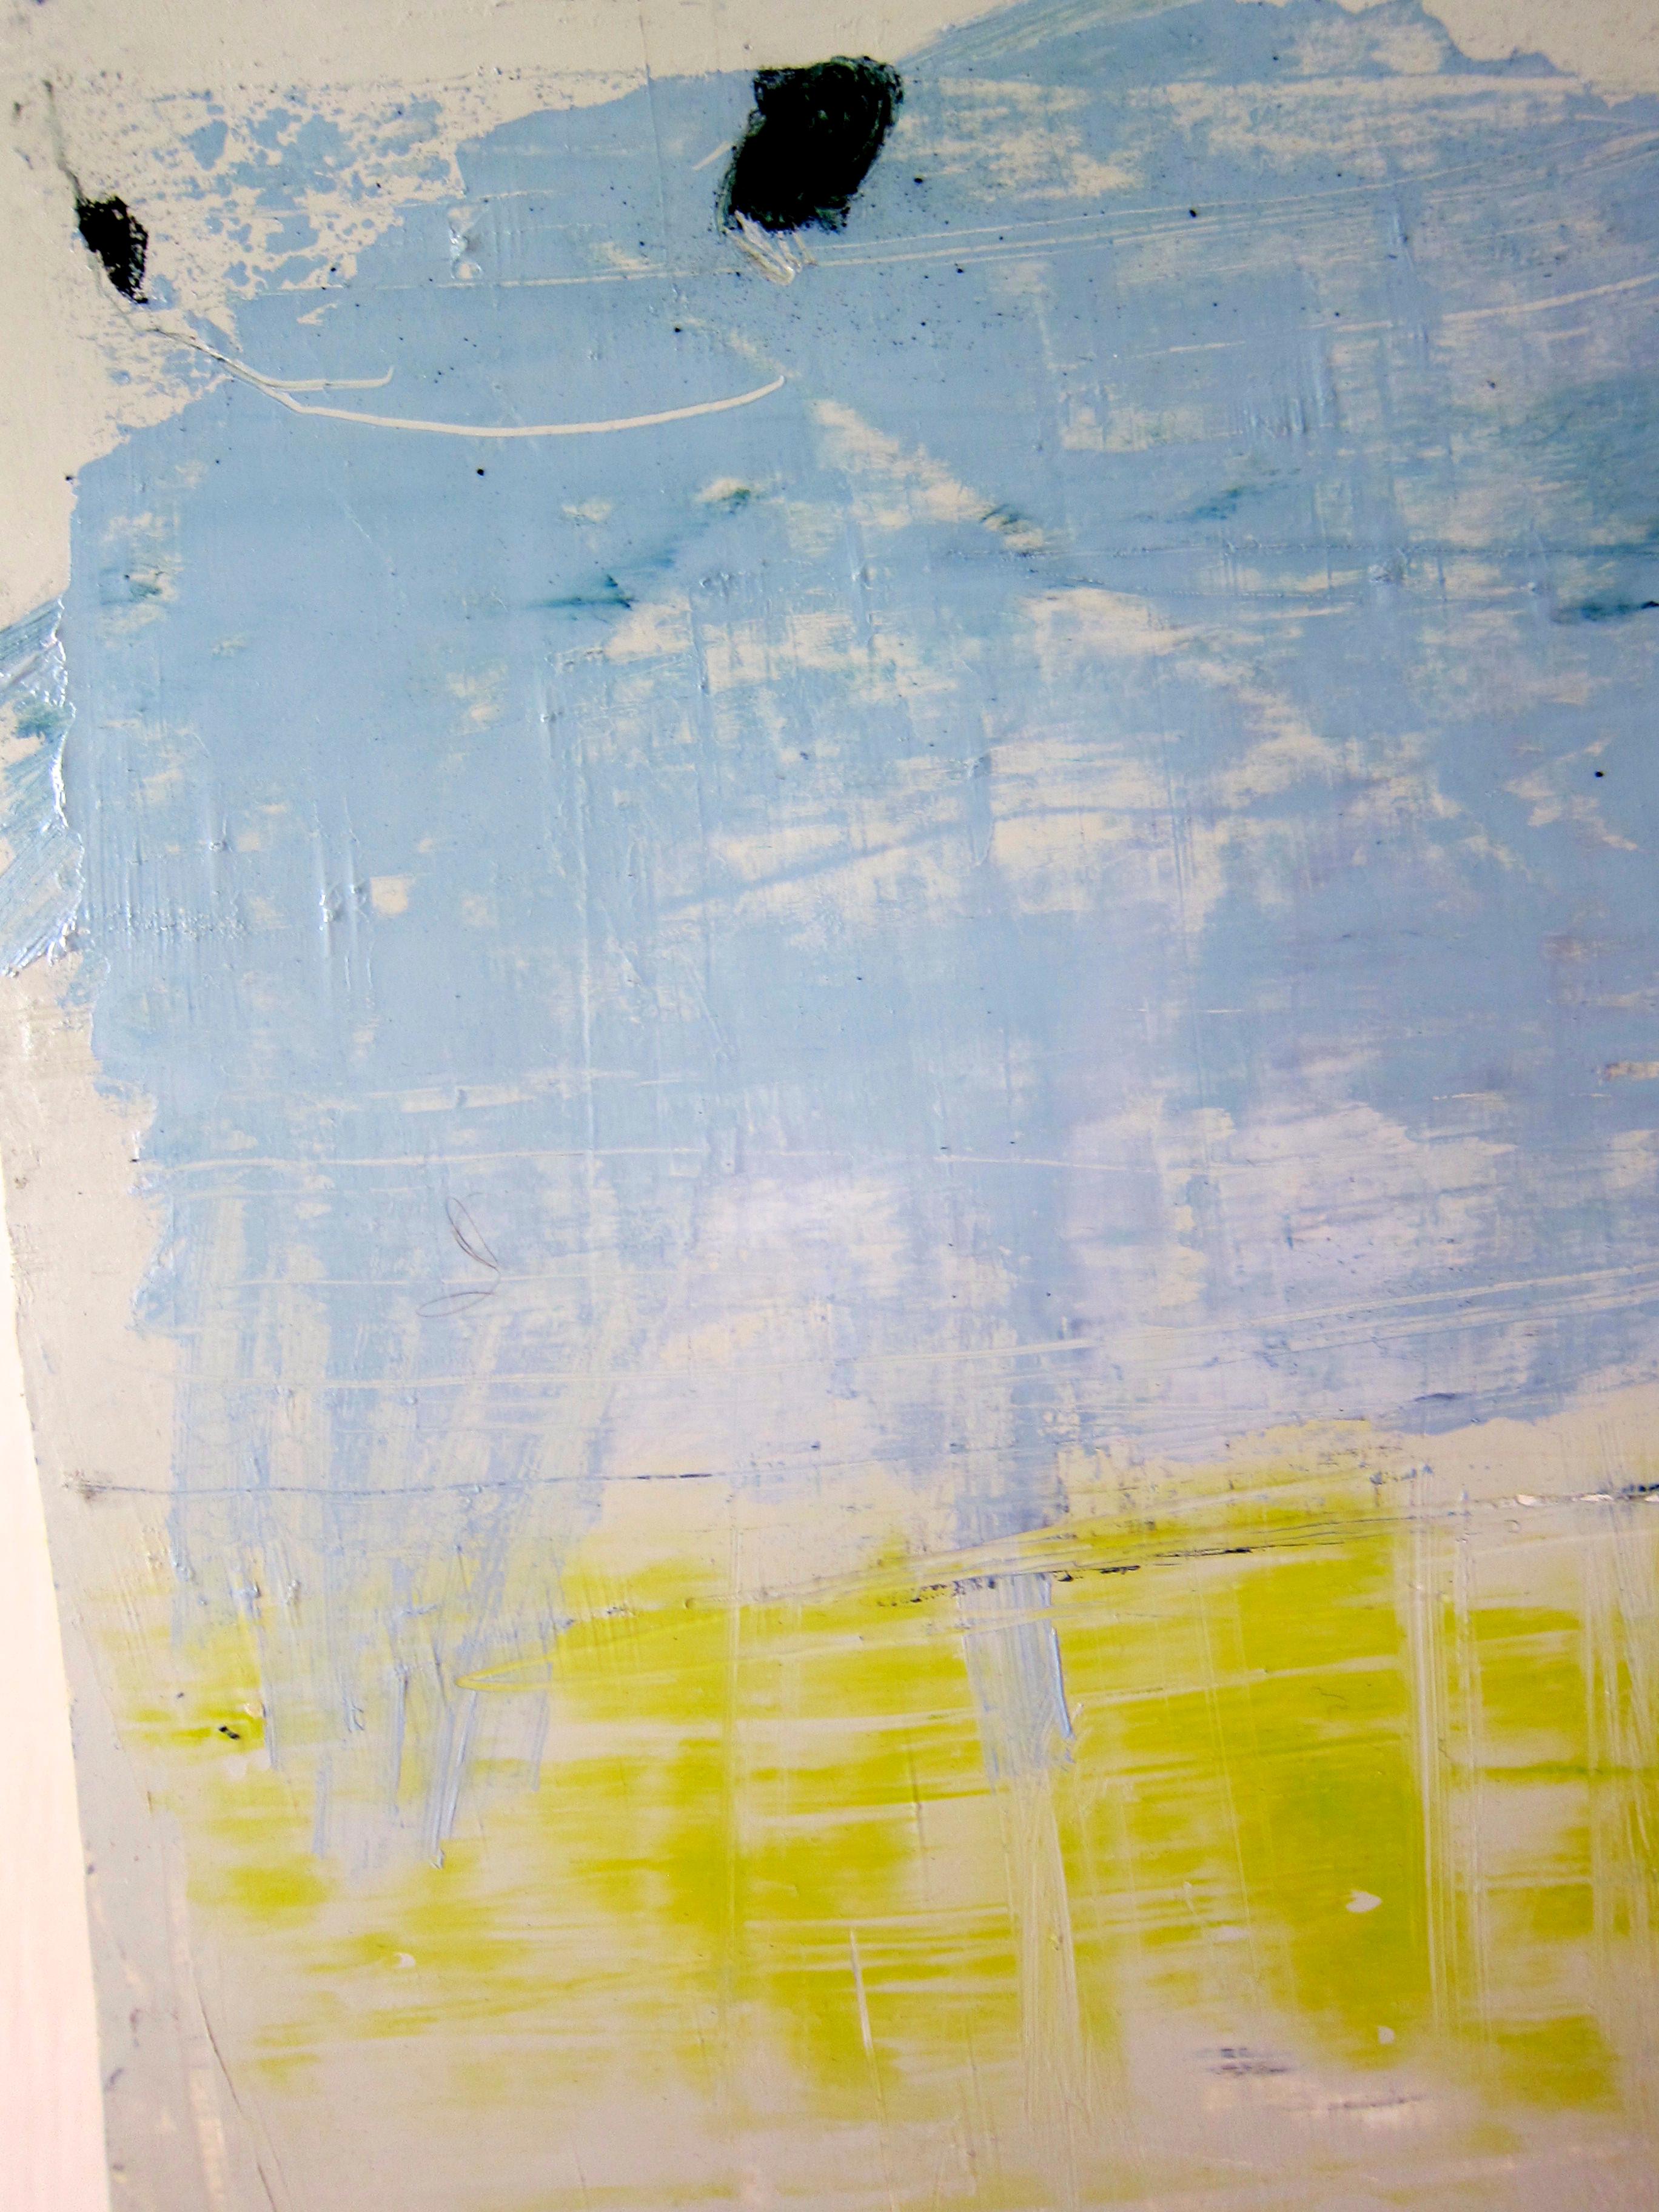 Abstract Painting Lisa Lightman - Océan, mer et ciel : minimaliste, huile, pastel sur papier, 2012